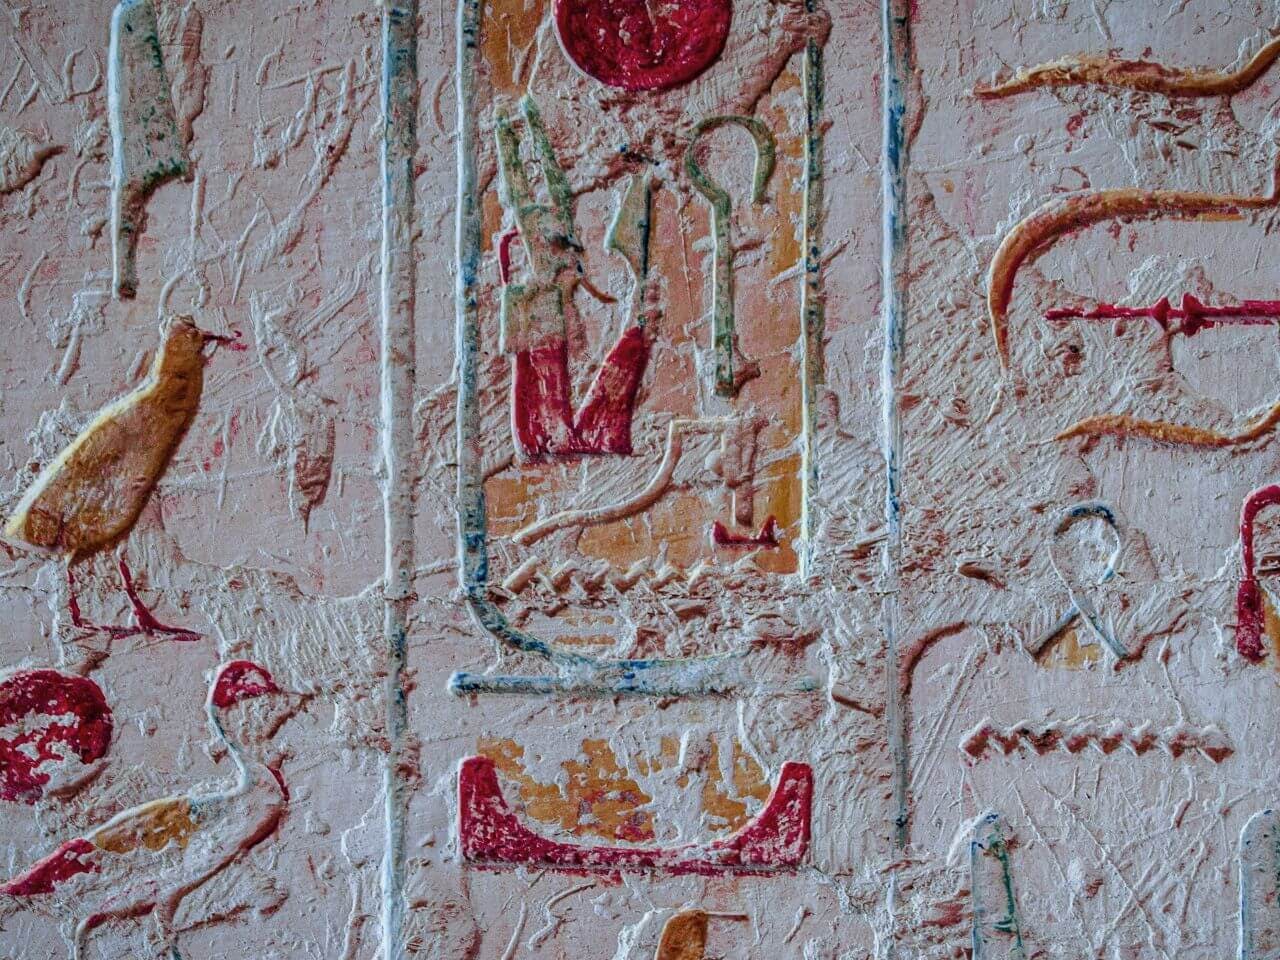 Tomb of Pharaoh Ramesses IV, Luxor, Egypt